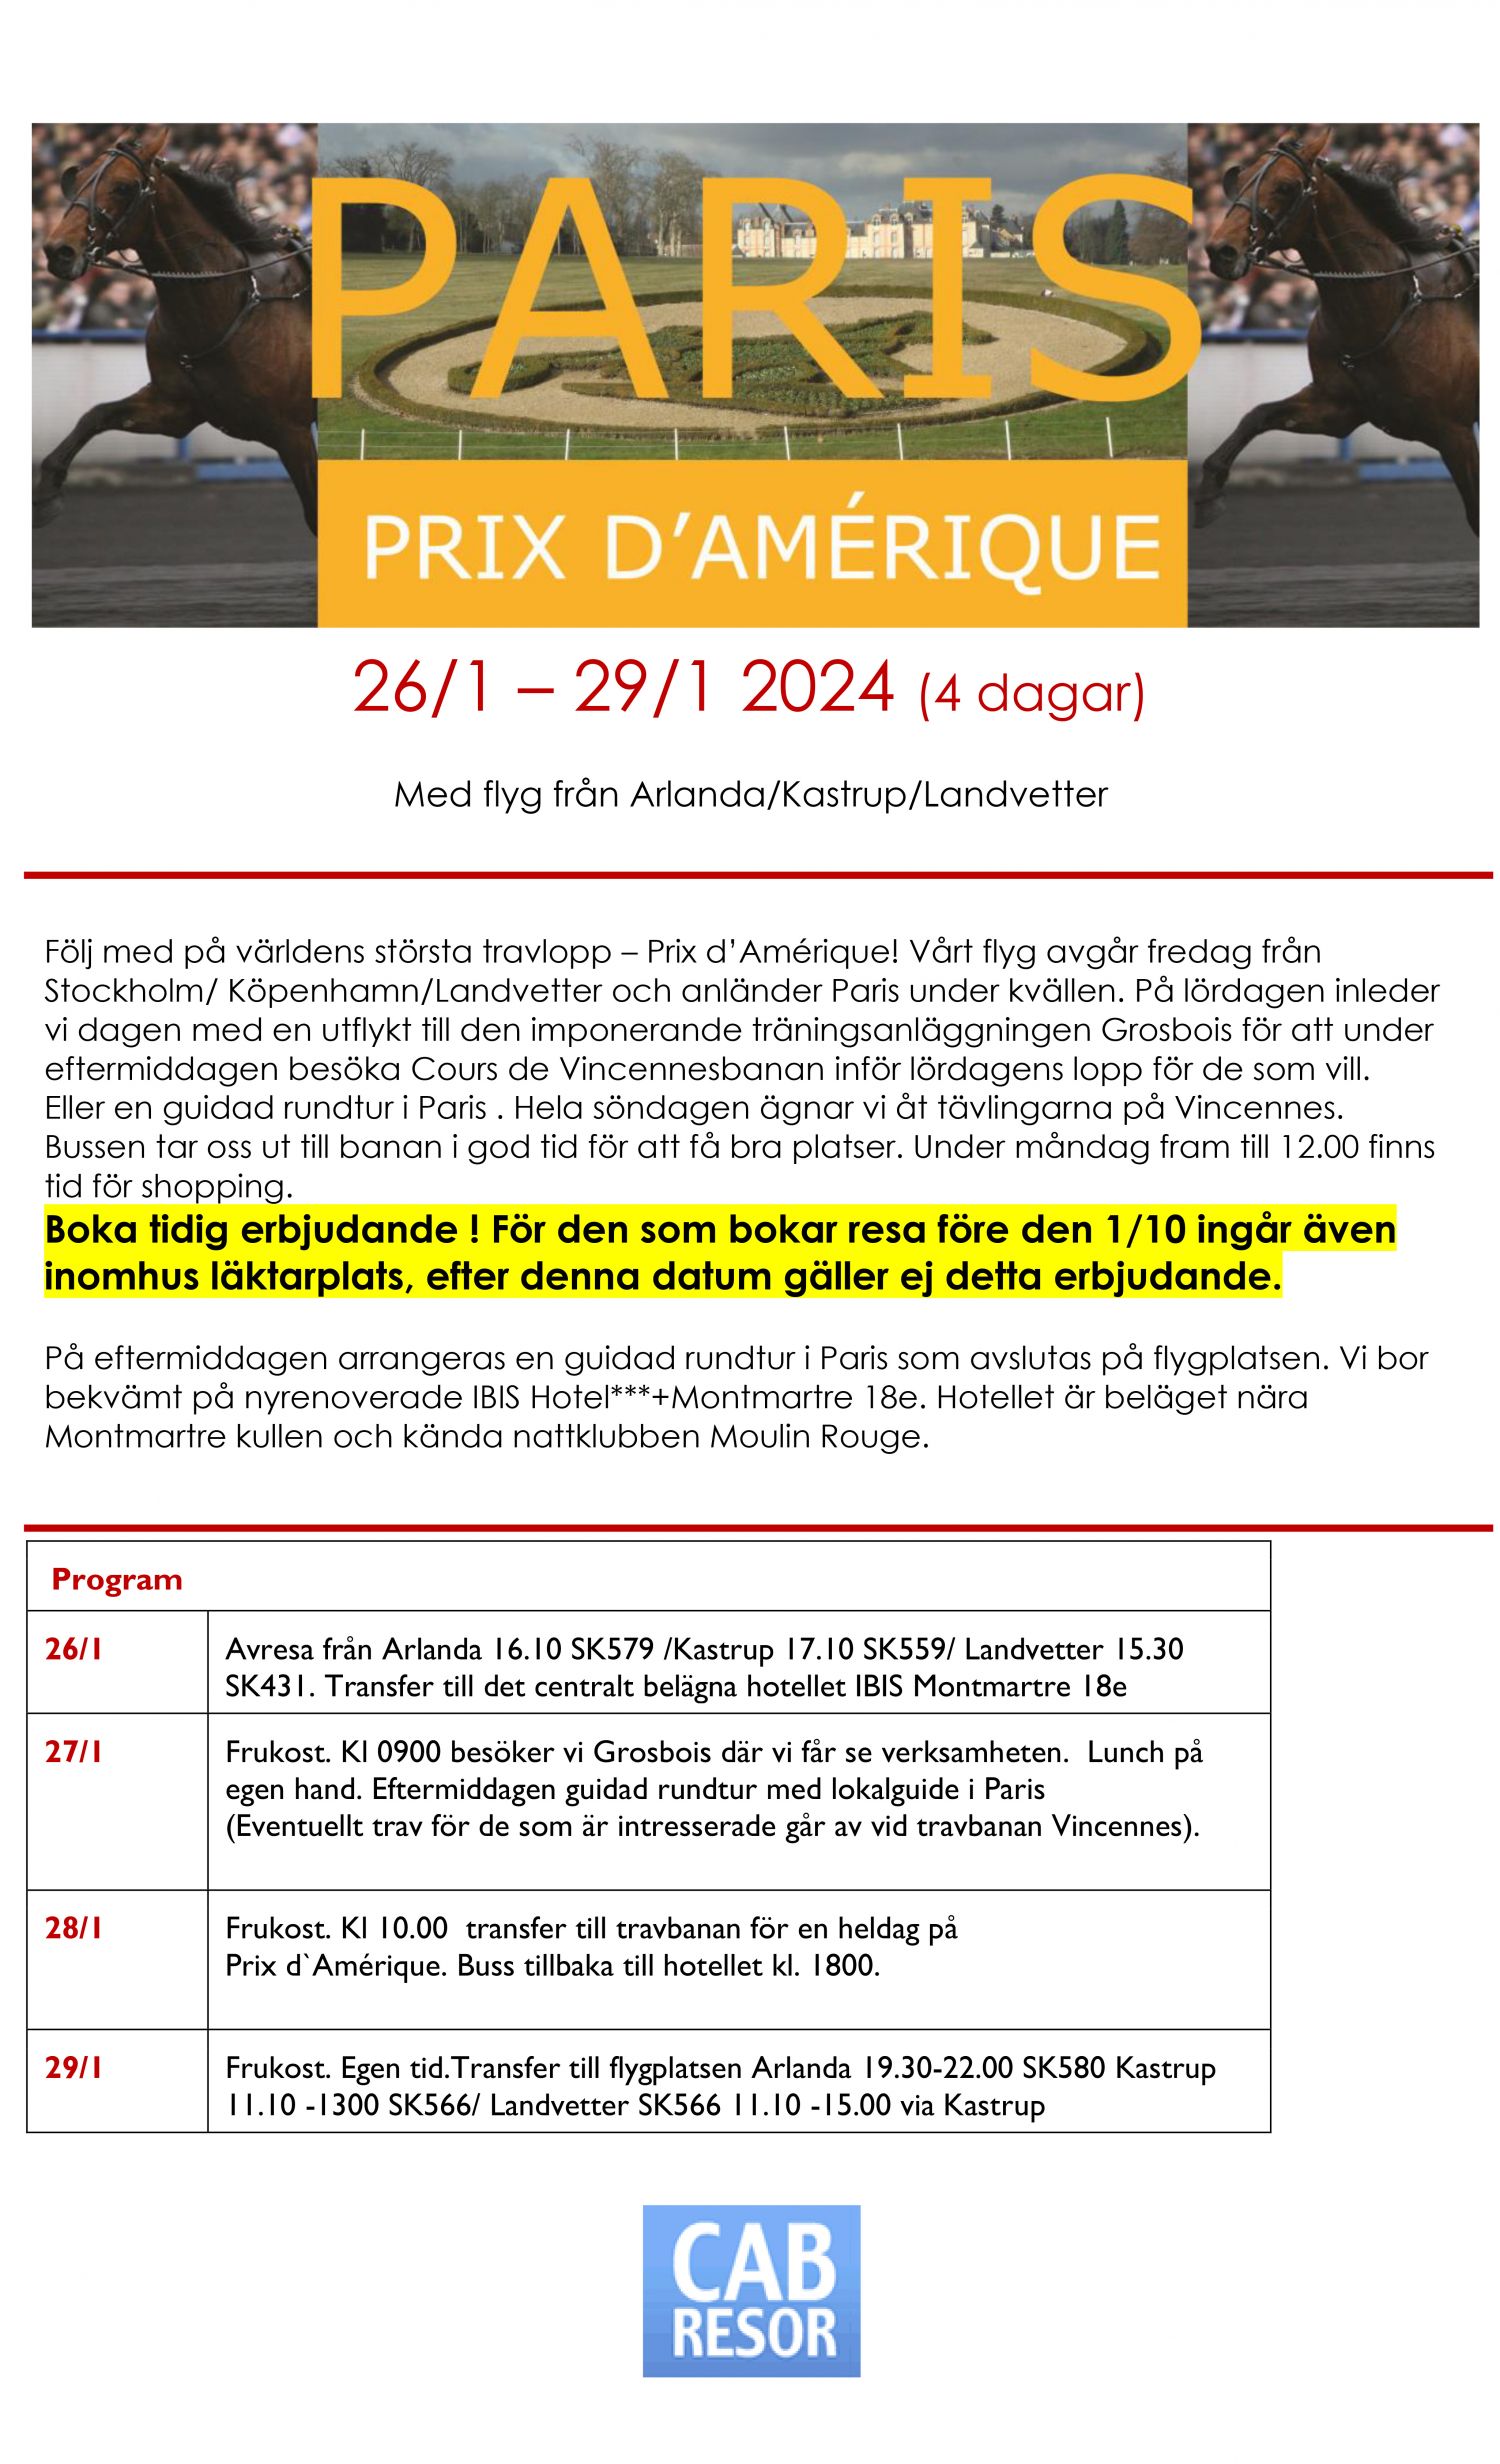 resor/pdfimages/prix-damerique-20241-1.jpg